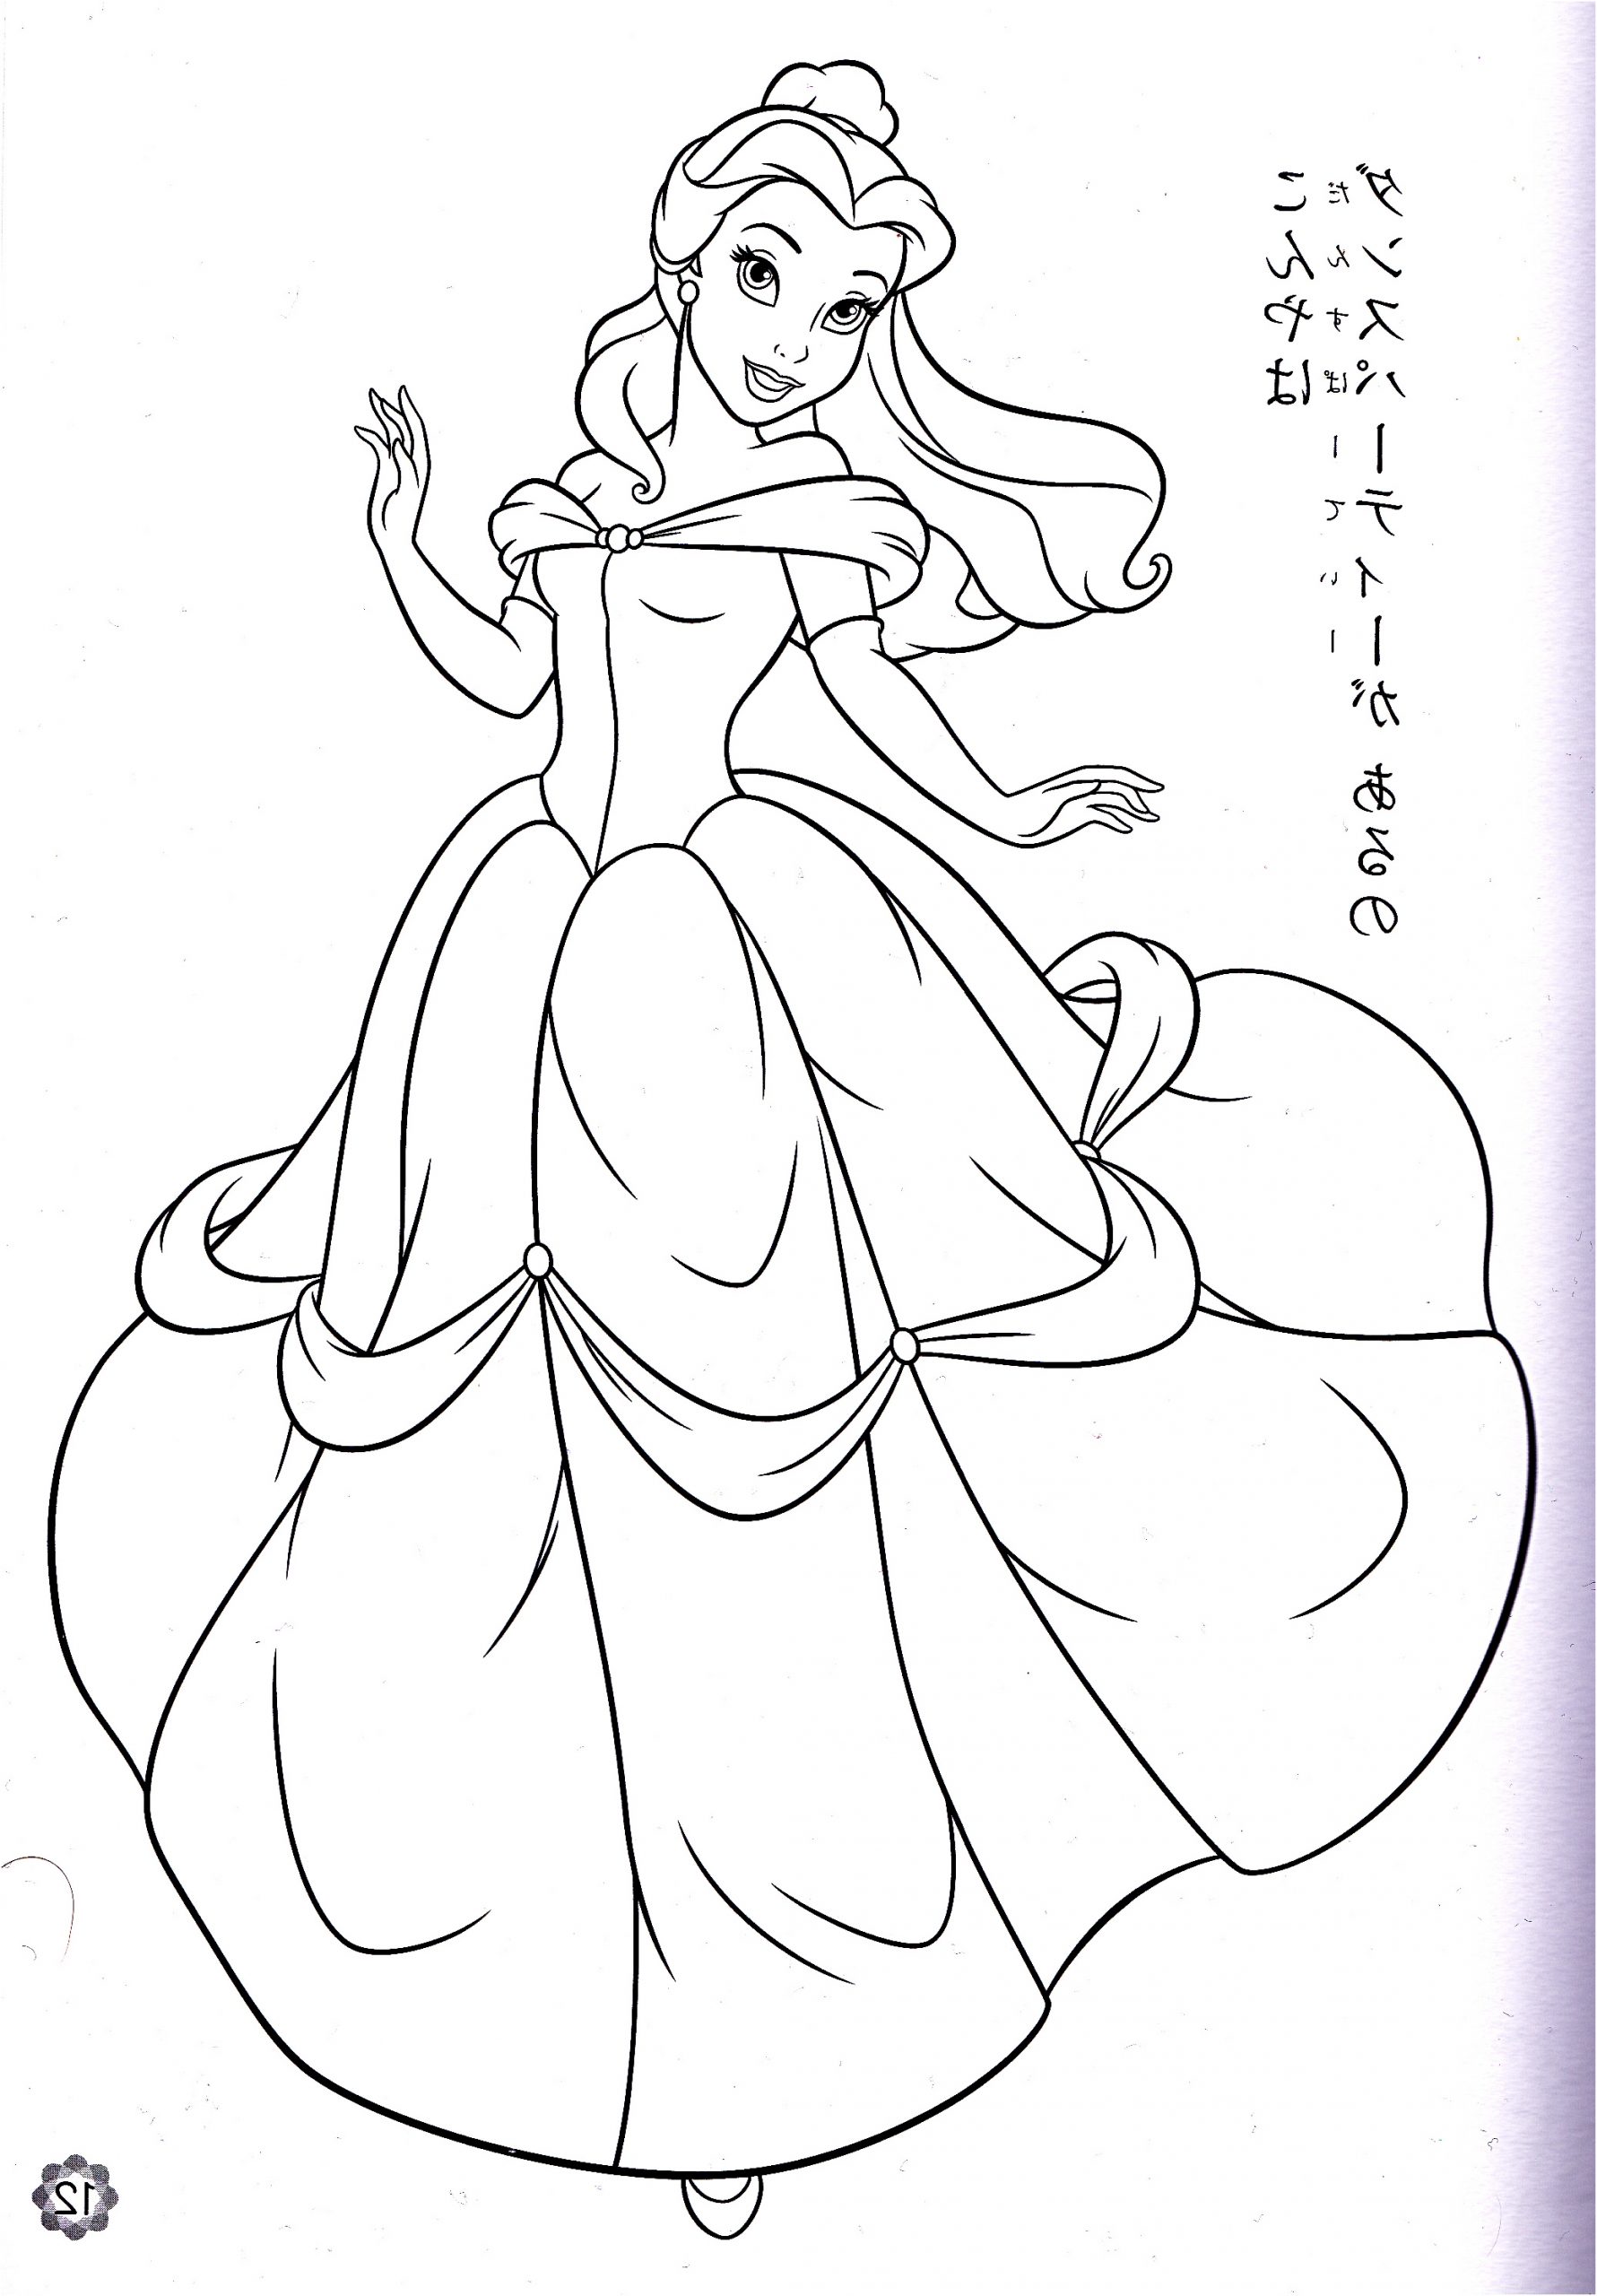 walt disney coloring pages princess belle photo